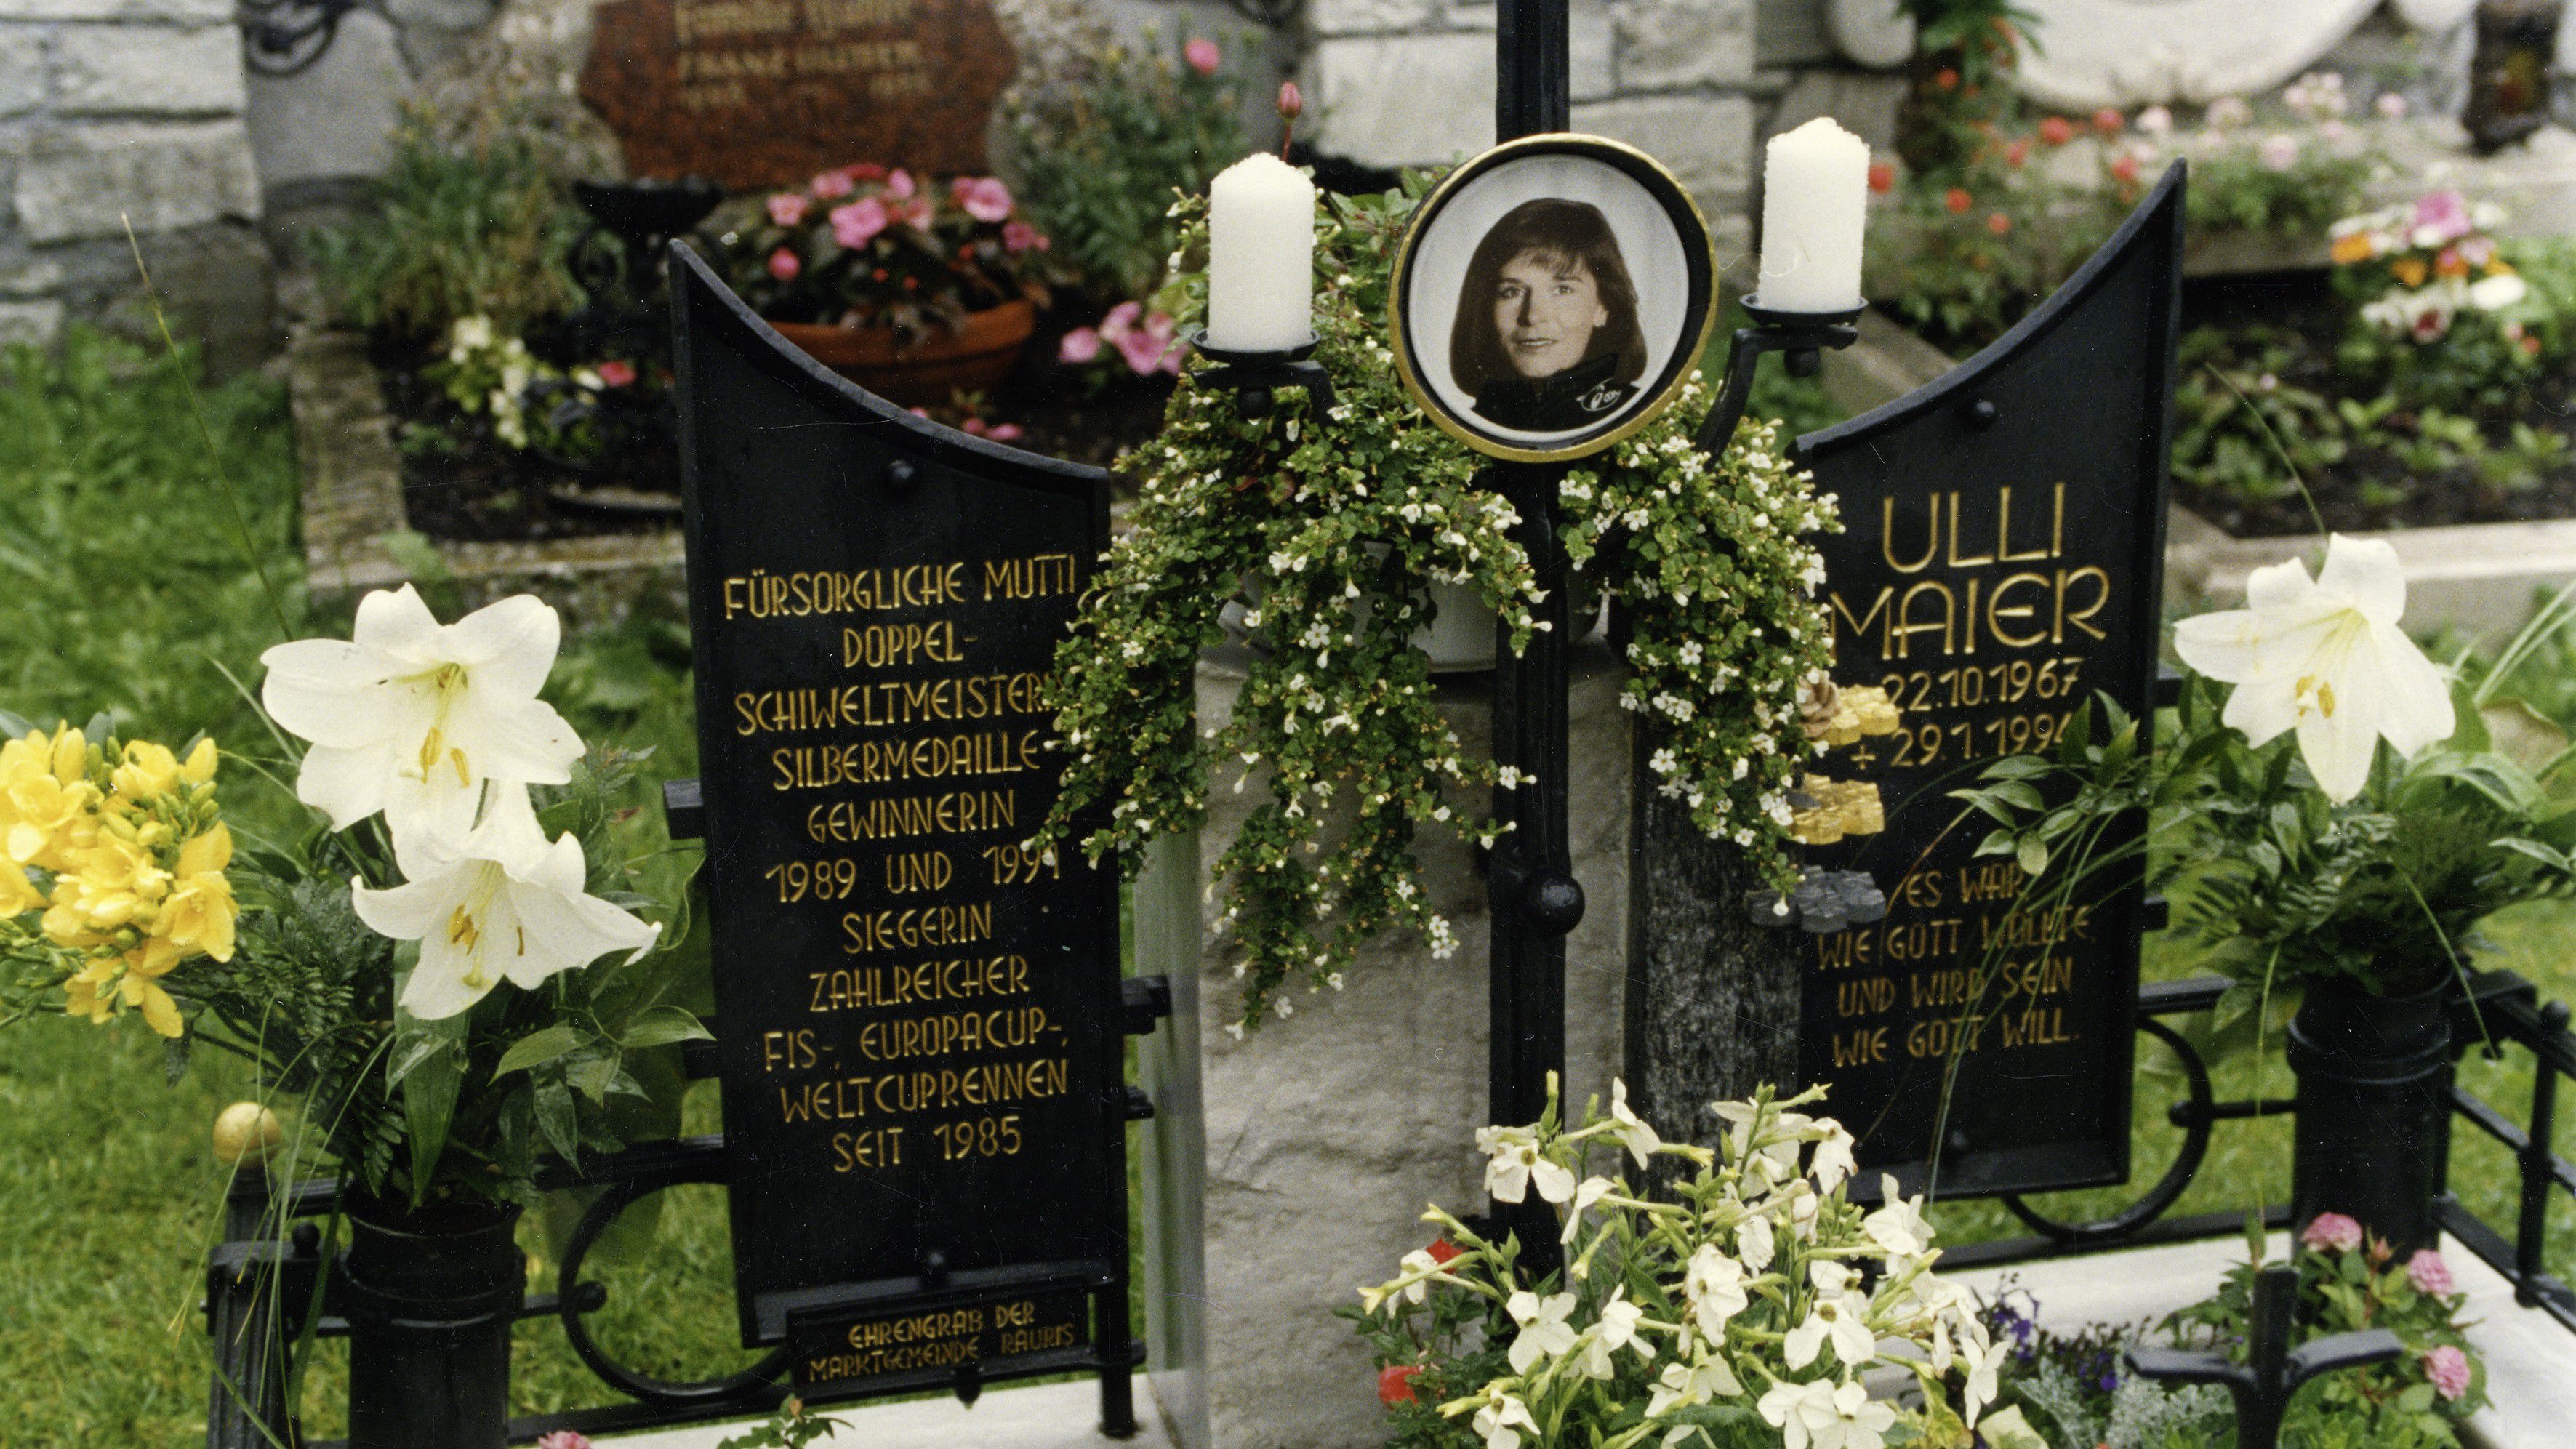 Közszeretet övezte az elhunyt bajnokot, ennek jele az is, hogy a sírkövére is becenevét, Ullit vésték fel (Fotó: Getty Images)